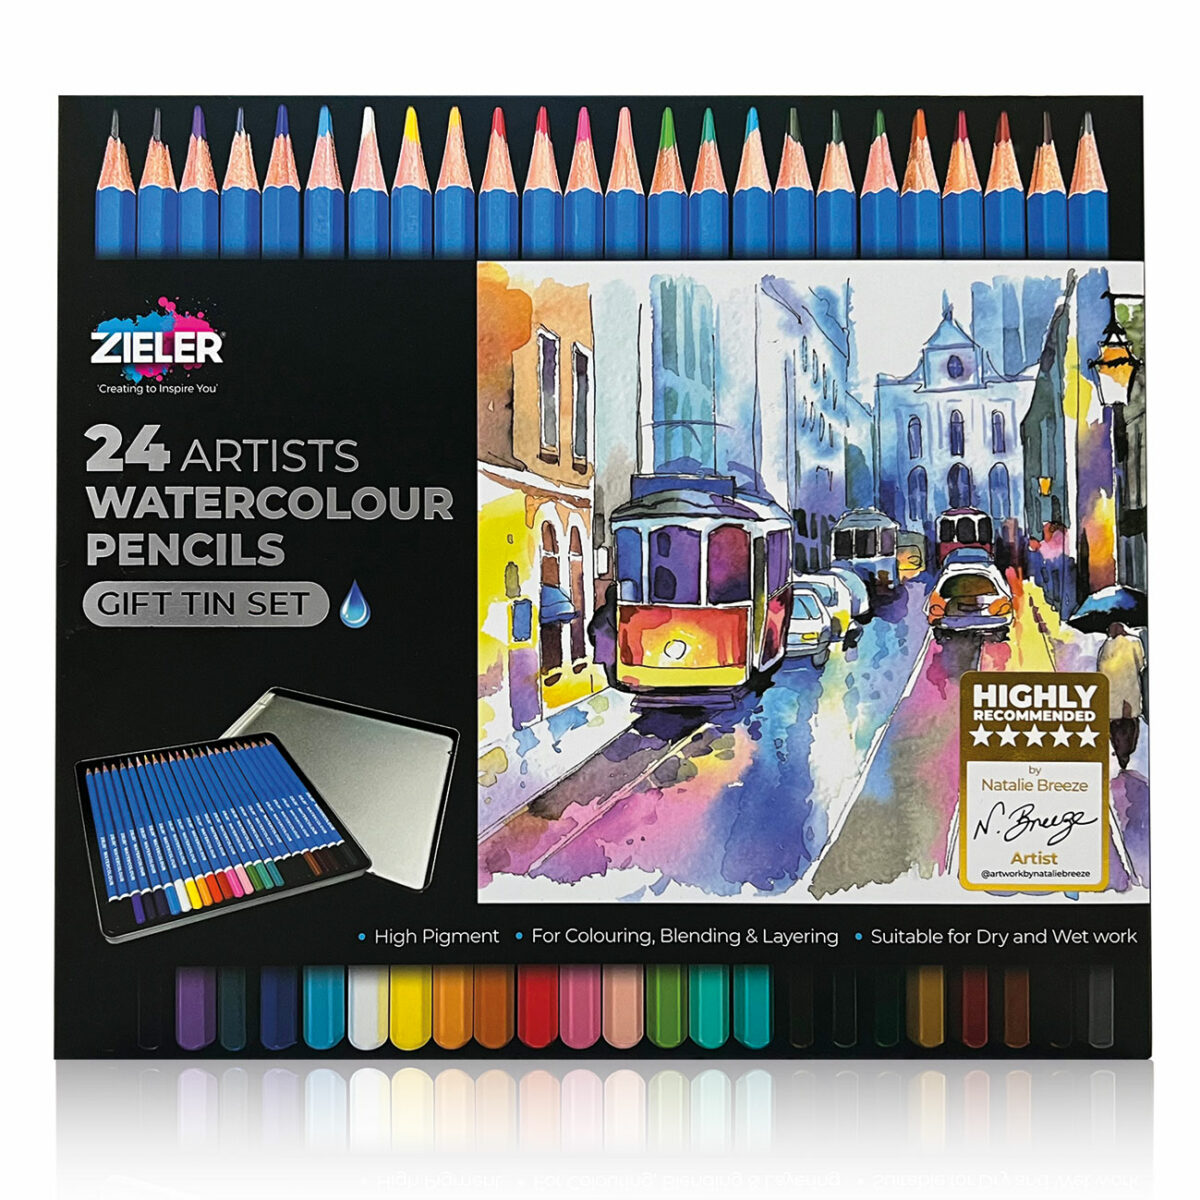 24 Watercolour Pencils - Zieler Art Supplies